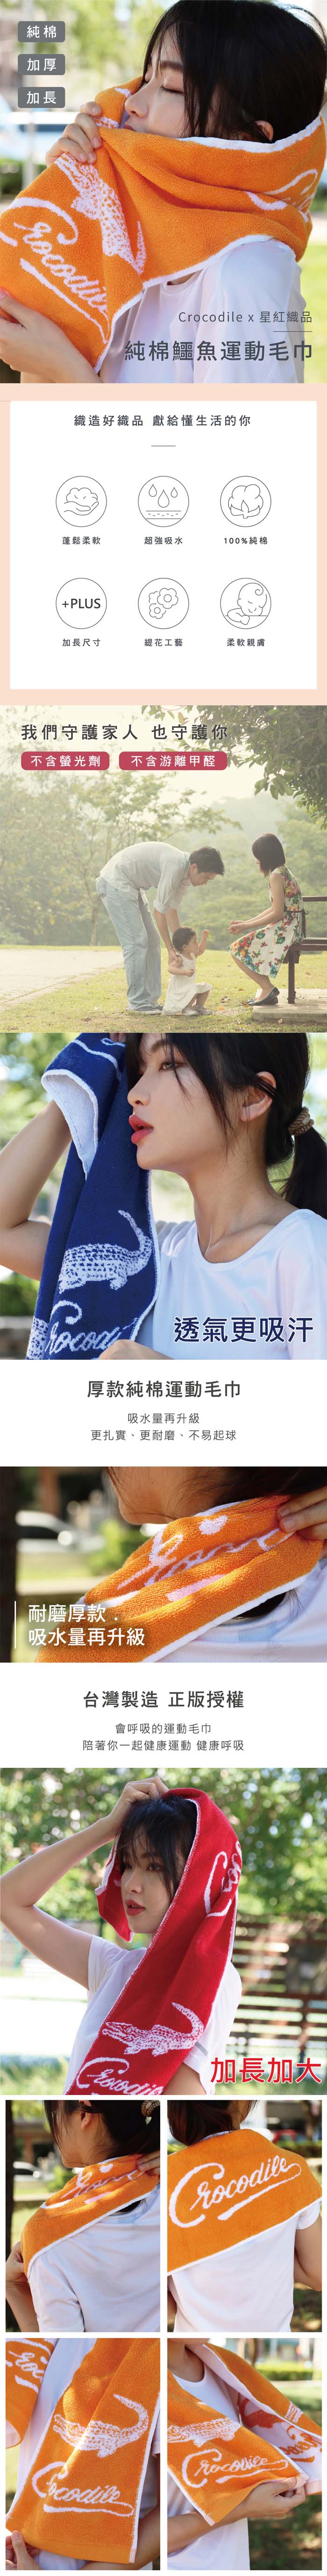 星紅織品 台灣製鱷魚正版授權加厚加長版運動毛巾-12入(5色